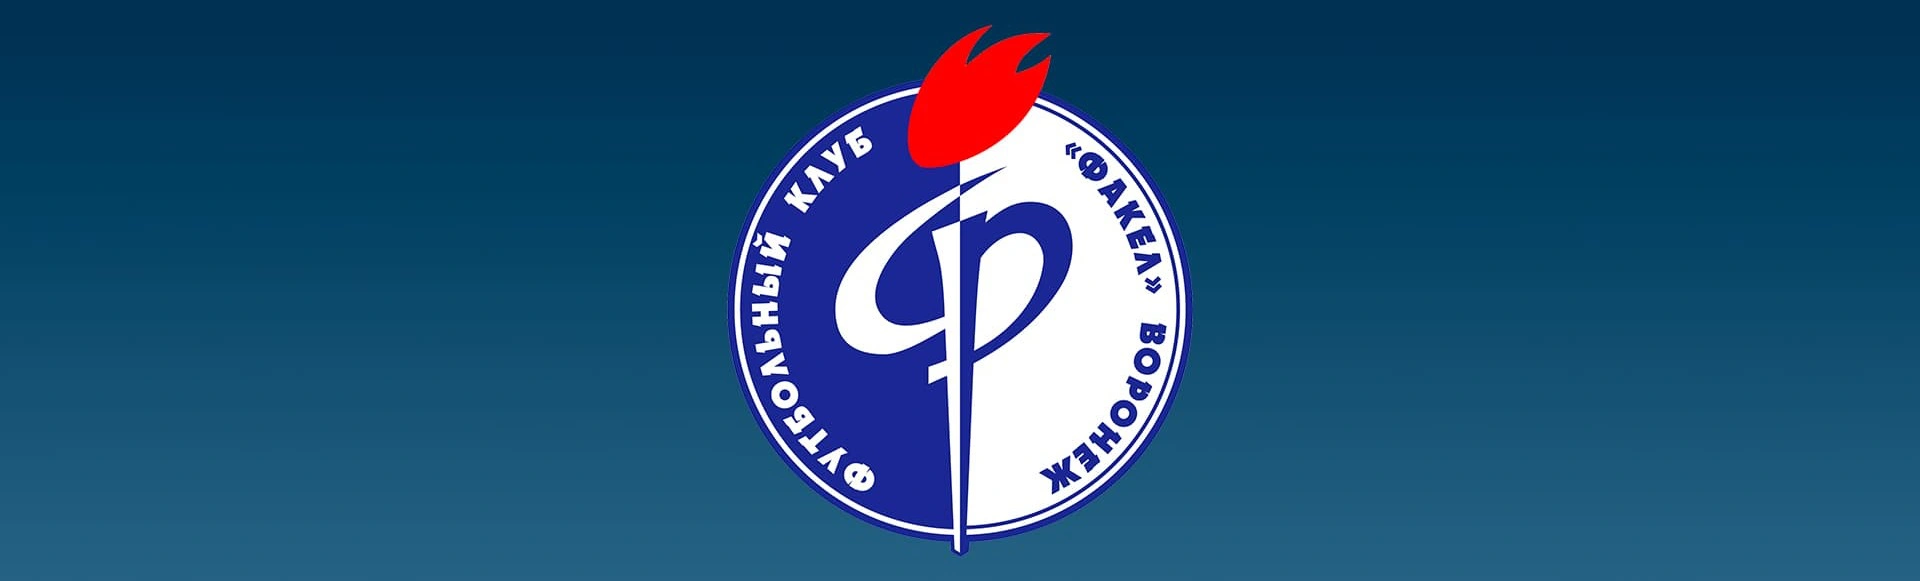 «Факел» объявил о модернизации логотипа и появлении брендбука
